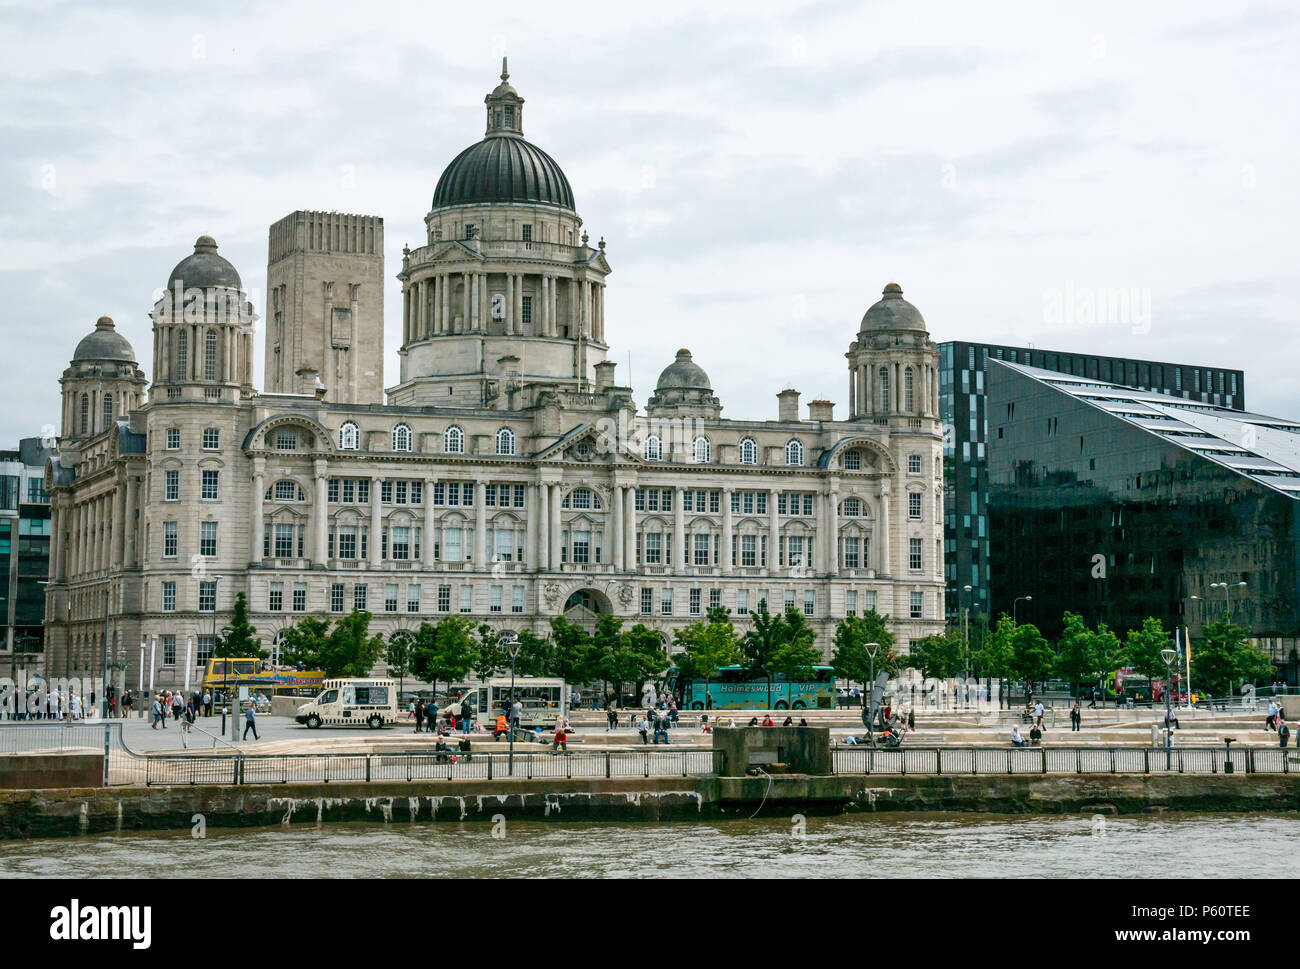 Eine der drei Grazien, gewölbtes Edwardianisches Grandhotel Barockstil Hafen von Liverpool Building, Pier Head, Liverpool, England, UK von Fluss Mersey gesehen Stockfoto